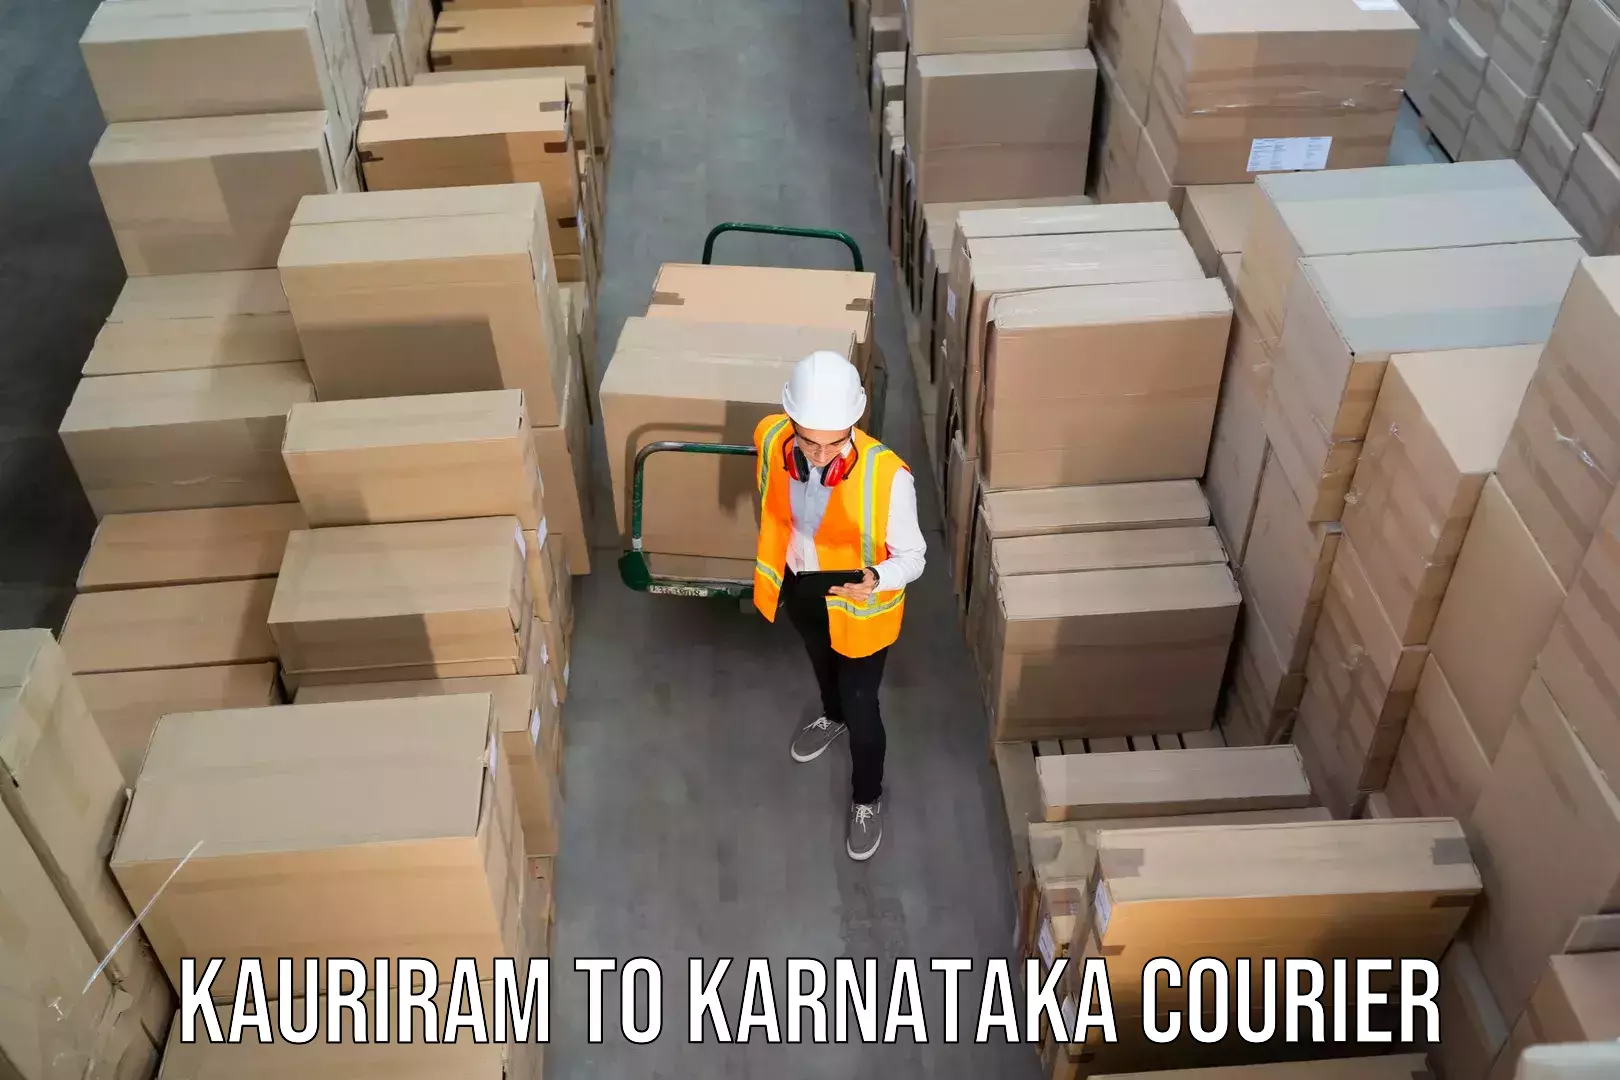 International courier networks Kauriram to Yenepoya Mangalore